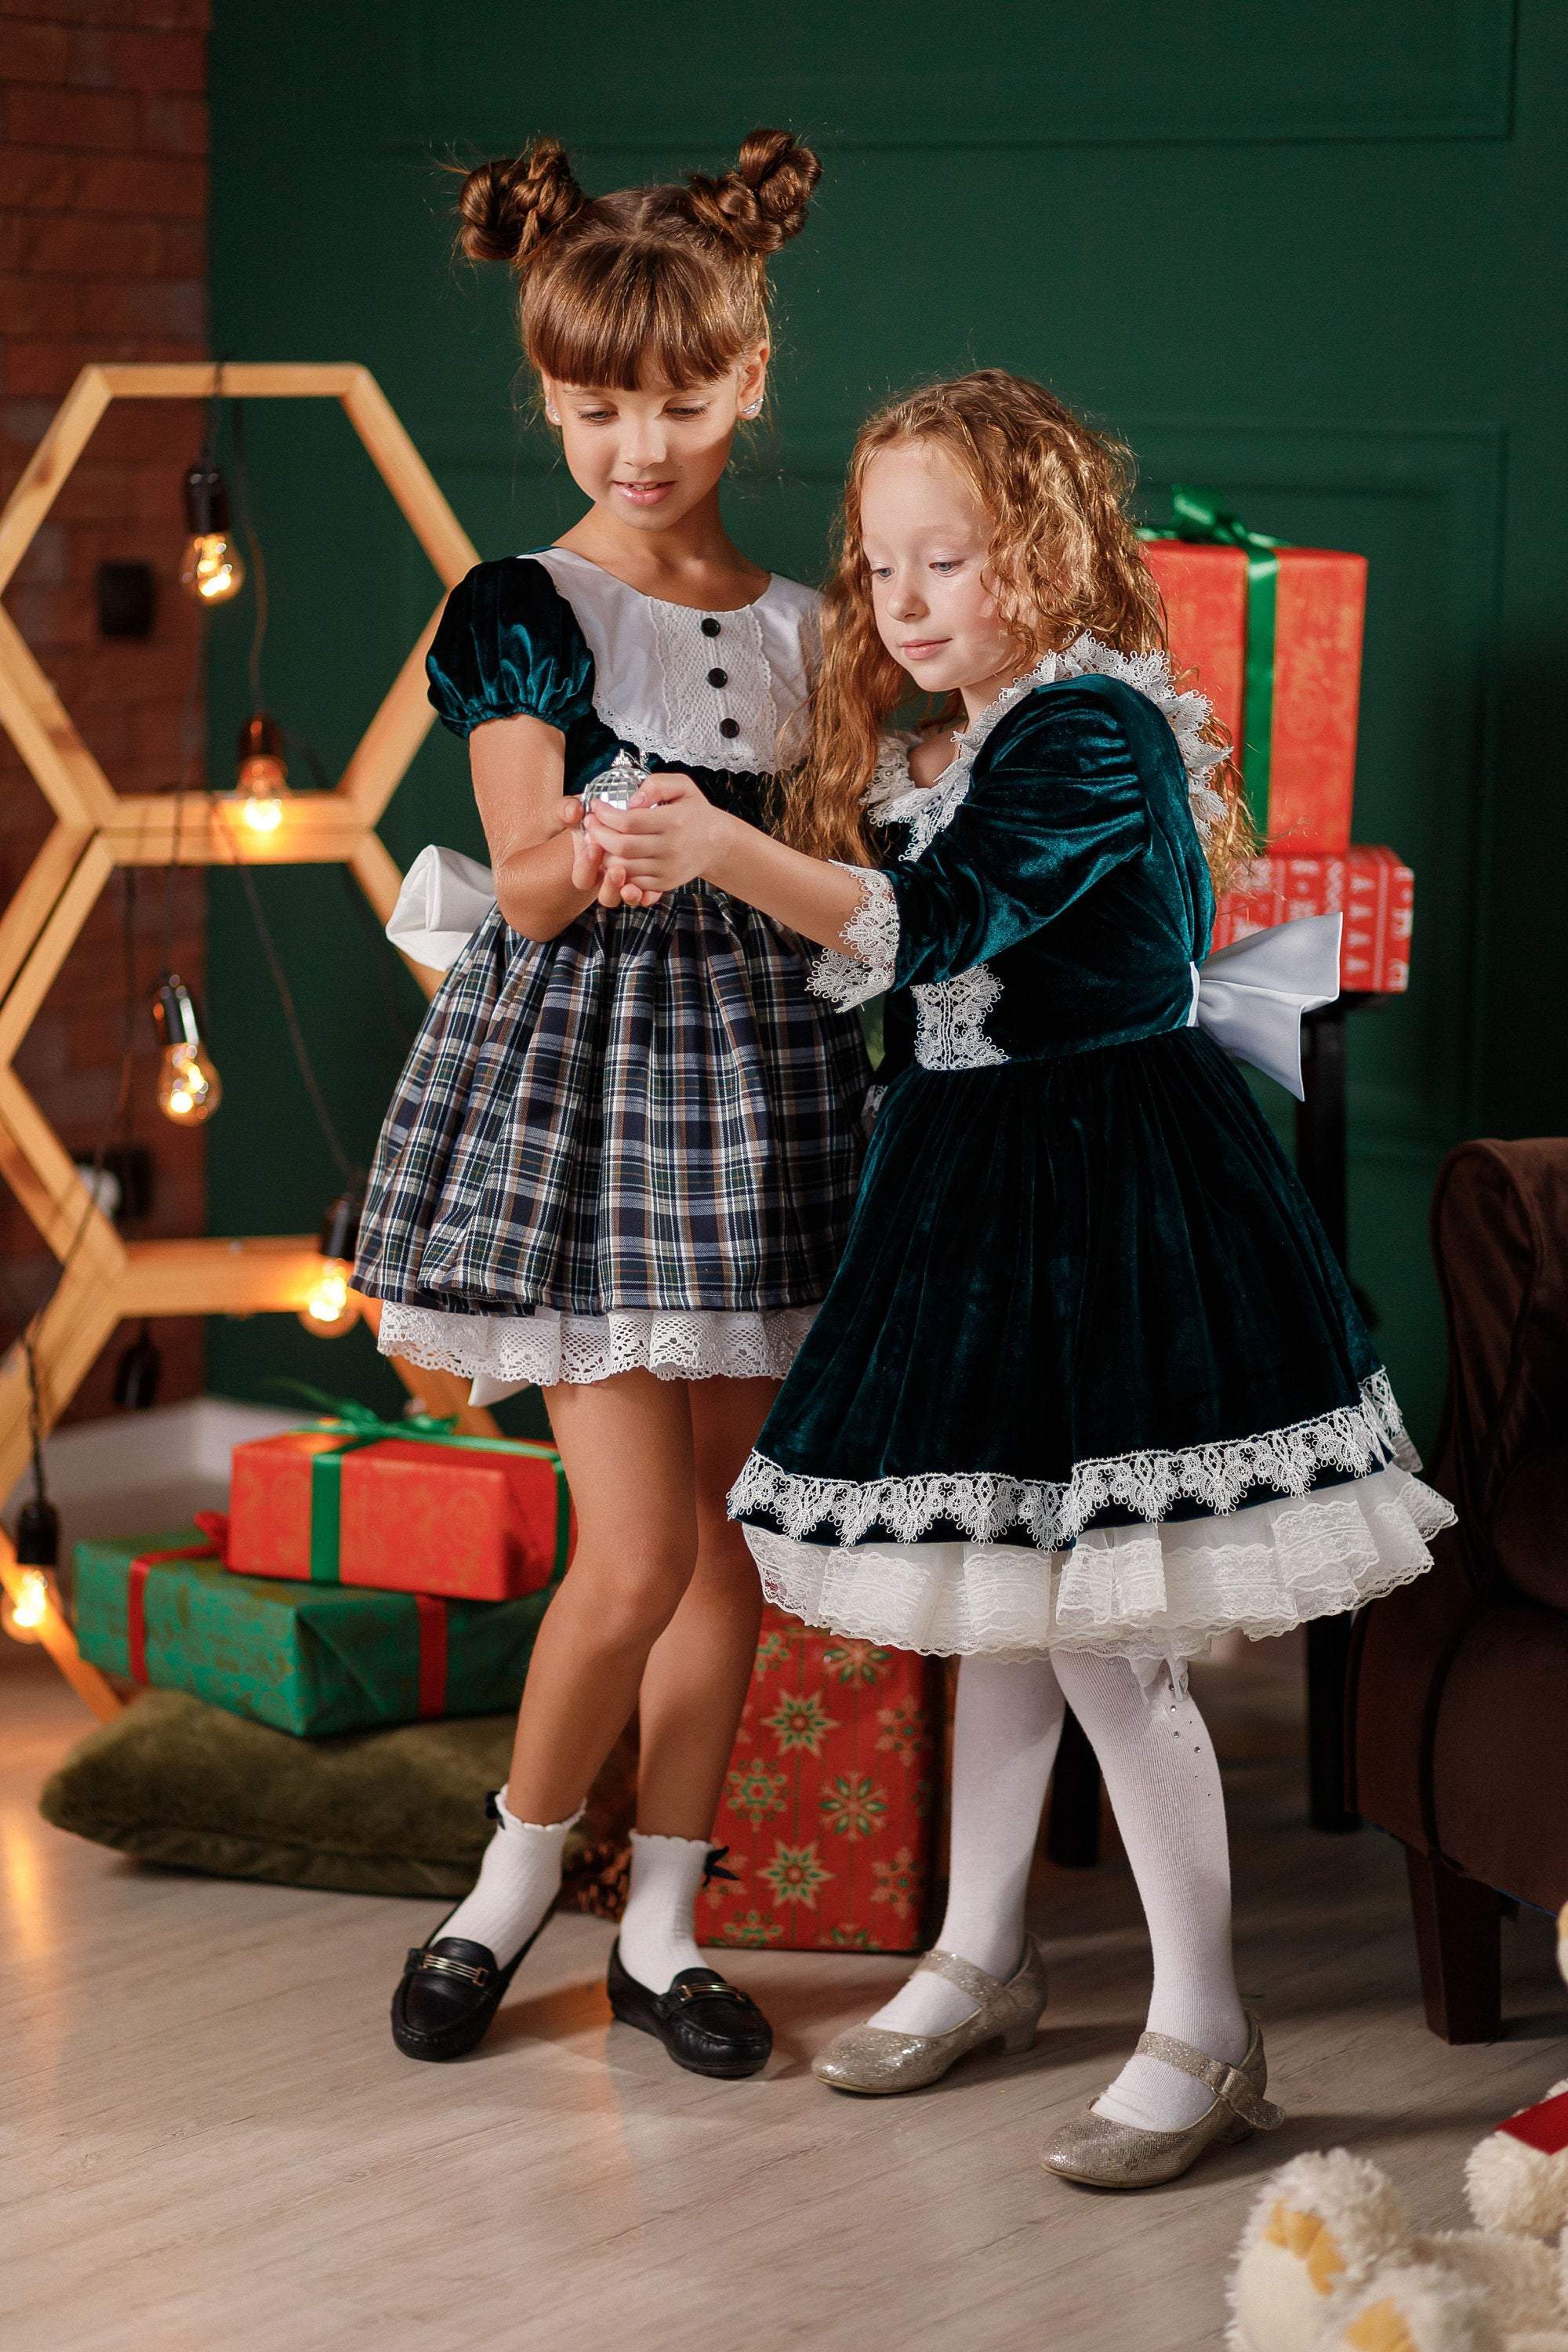 2343 Luxurious Little Girls Tutu Mini Dress for Party, Birthday, Gradu –  Mia Bambina Boutique